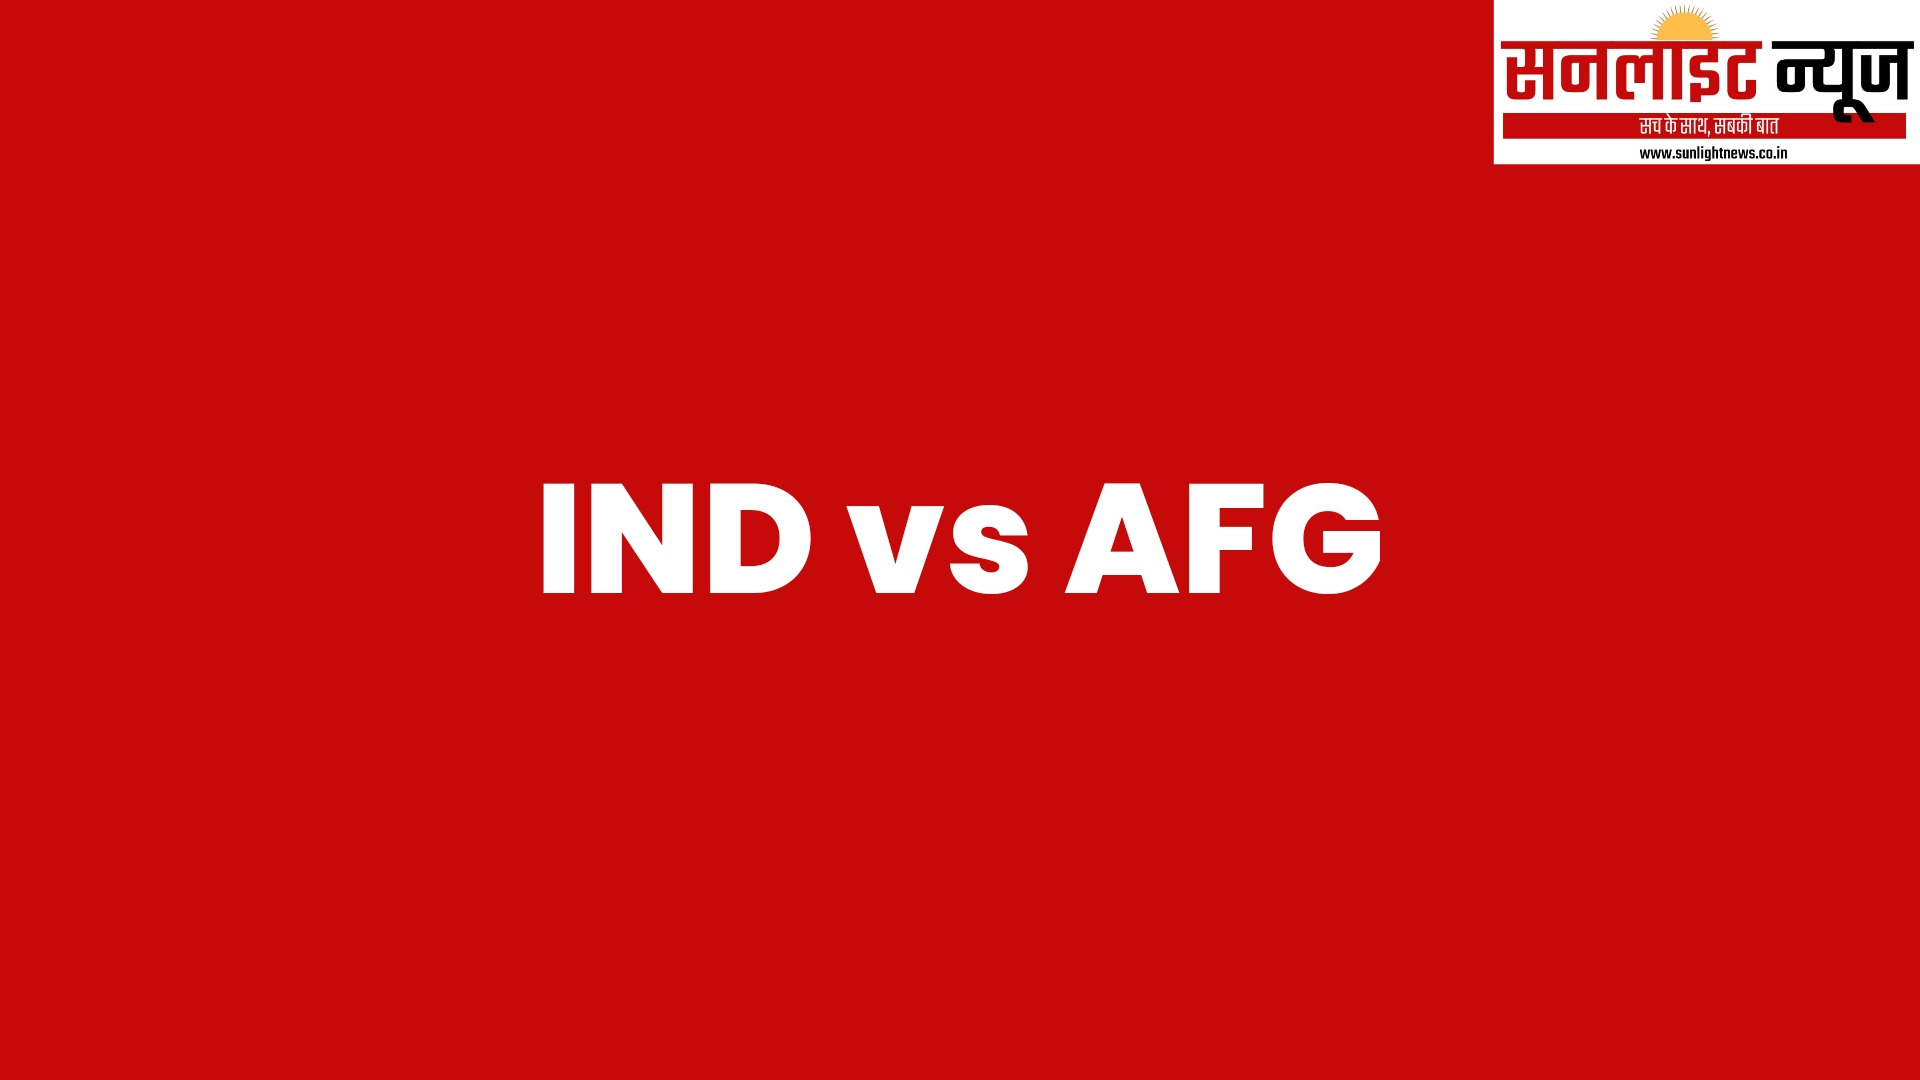 Ind vs afg t20 series